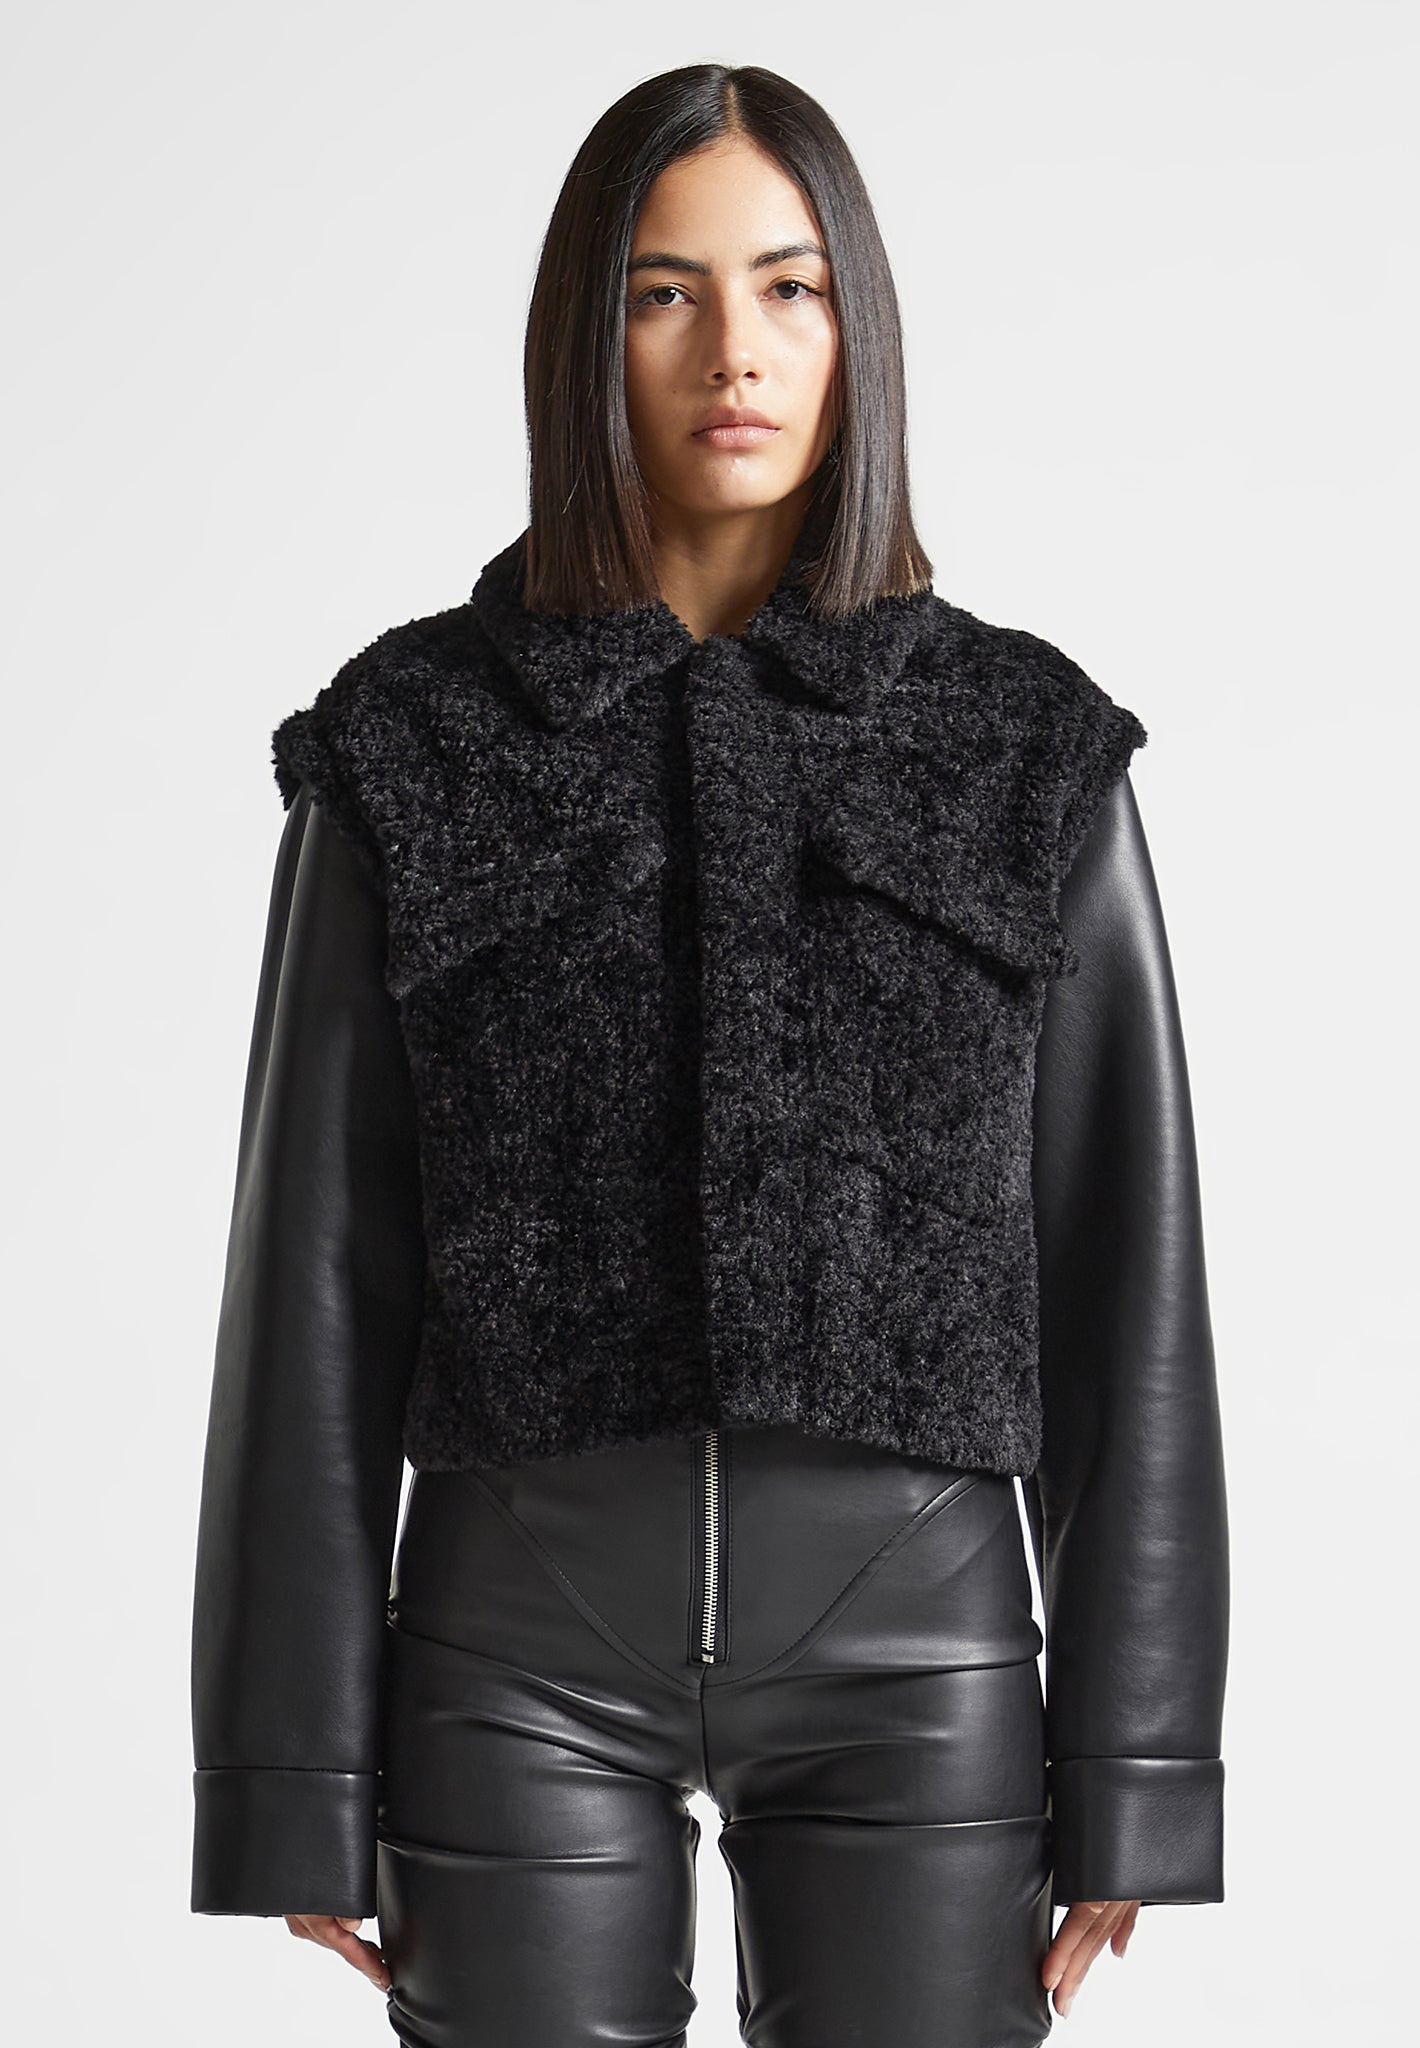 plush-jacket-with-vegan-leather-sleeves-black